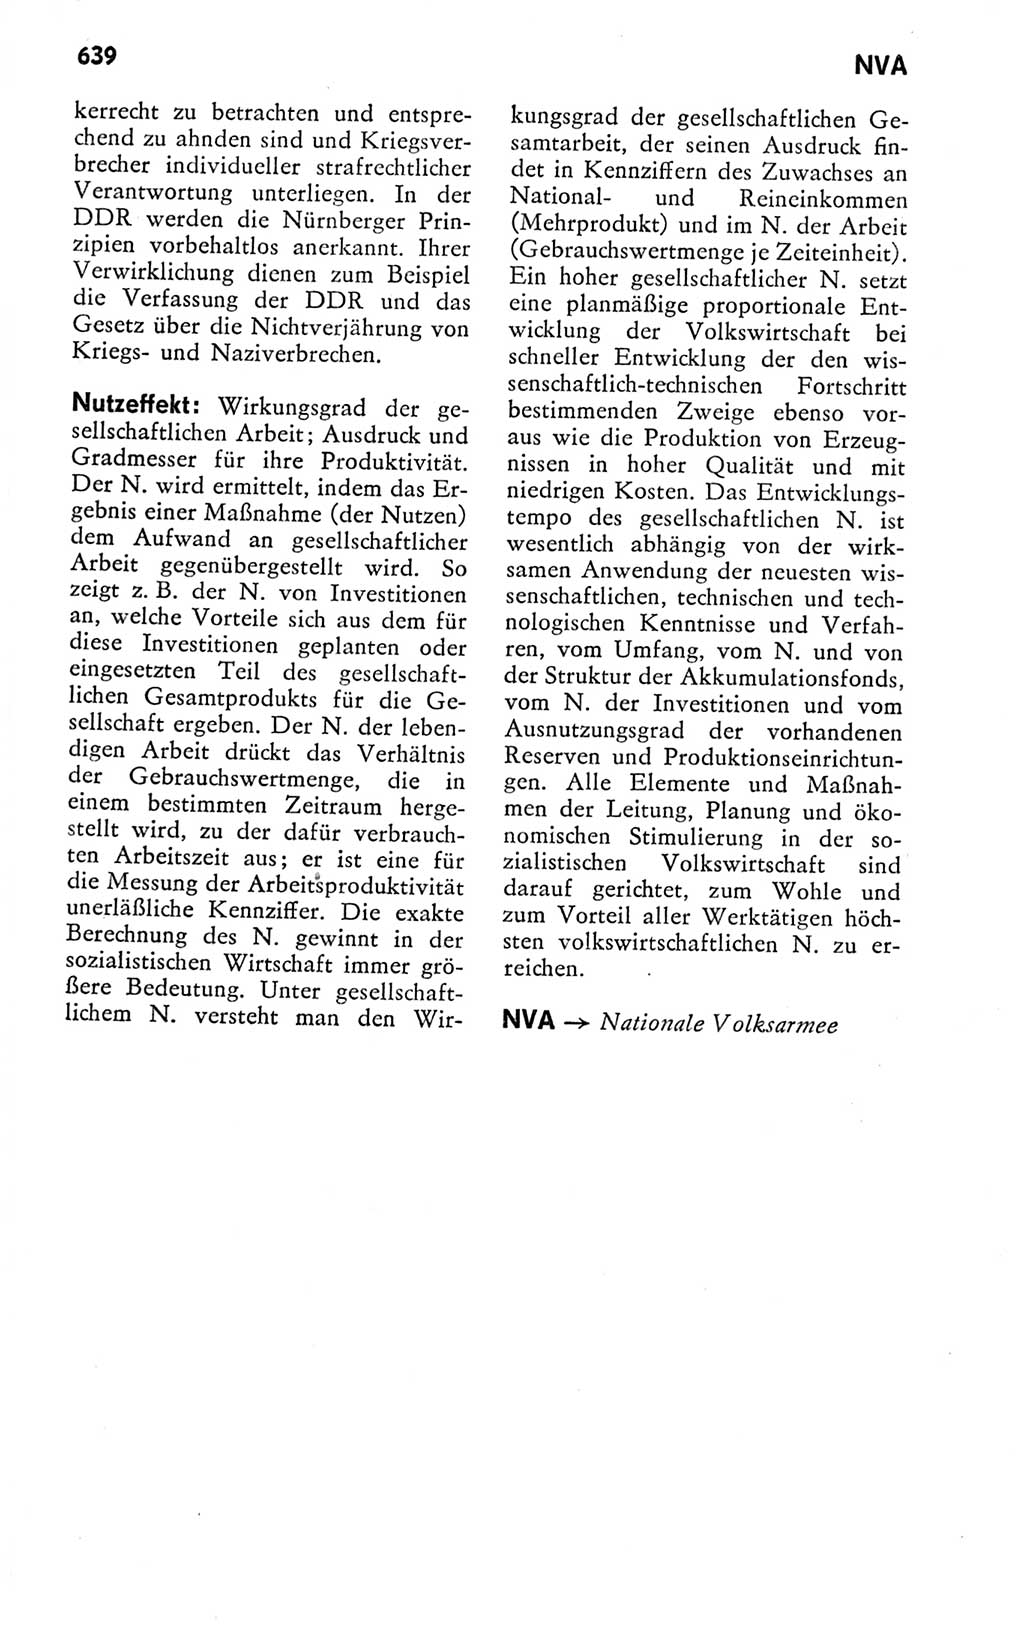 Kleines politisches Wörterbuch [Deutsche Demokratische Republik (DDR)] 1978, Seite 639 (Kl. pol. Wb. DDR 1978, S. 639)